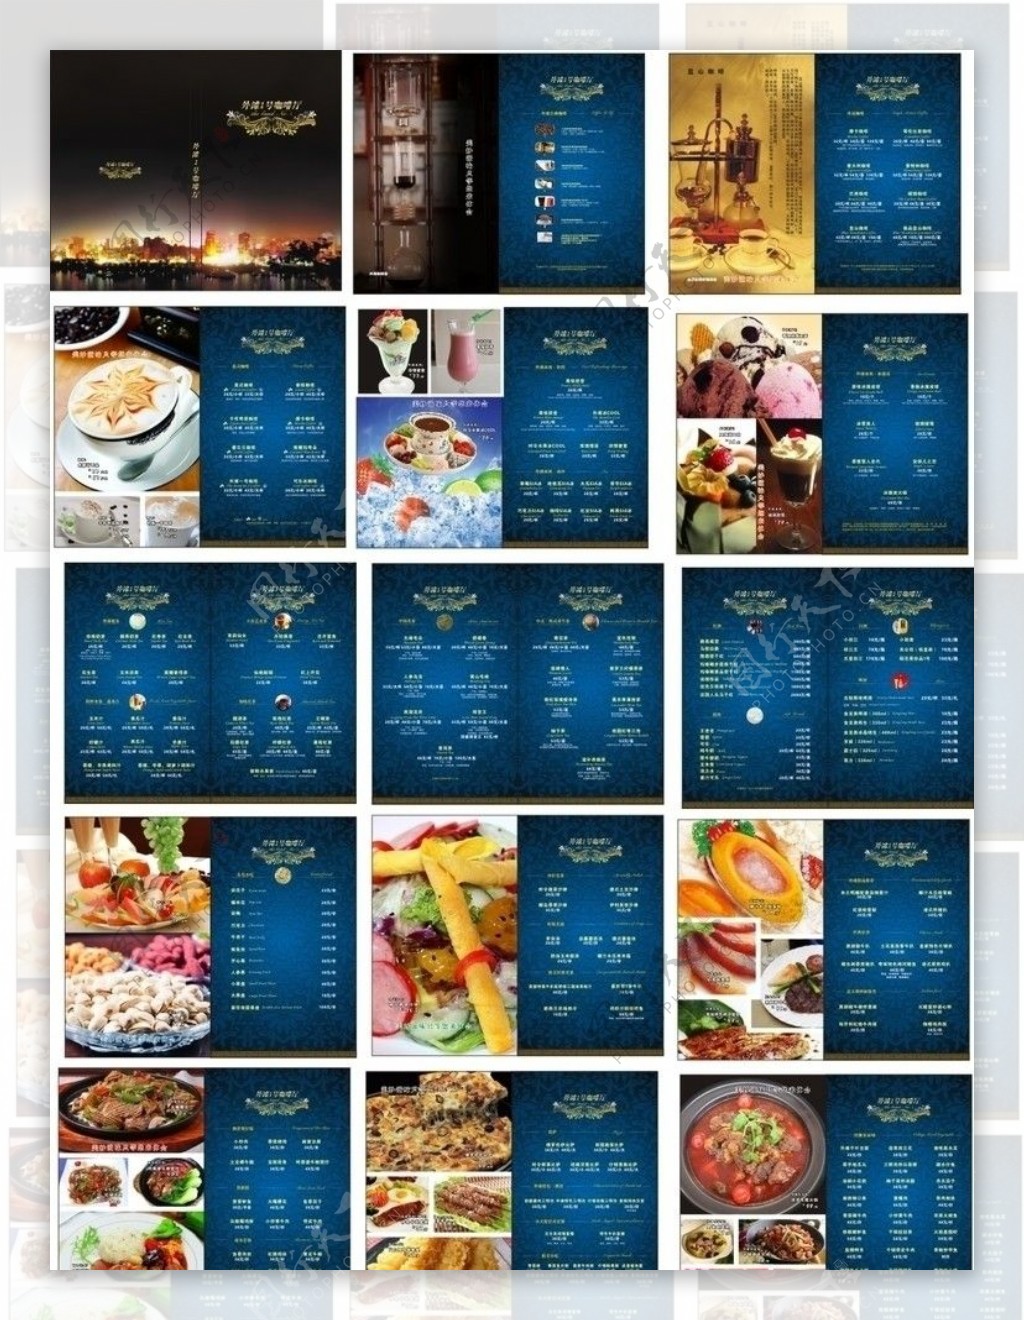 新外滩咖啡厅菜谱图片